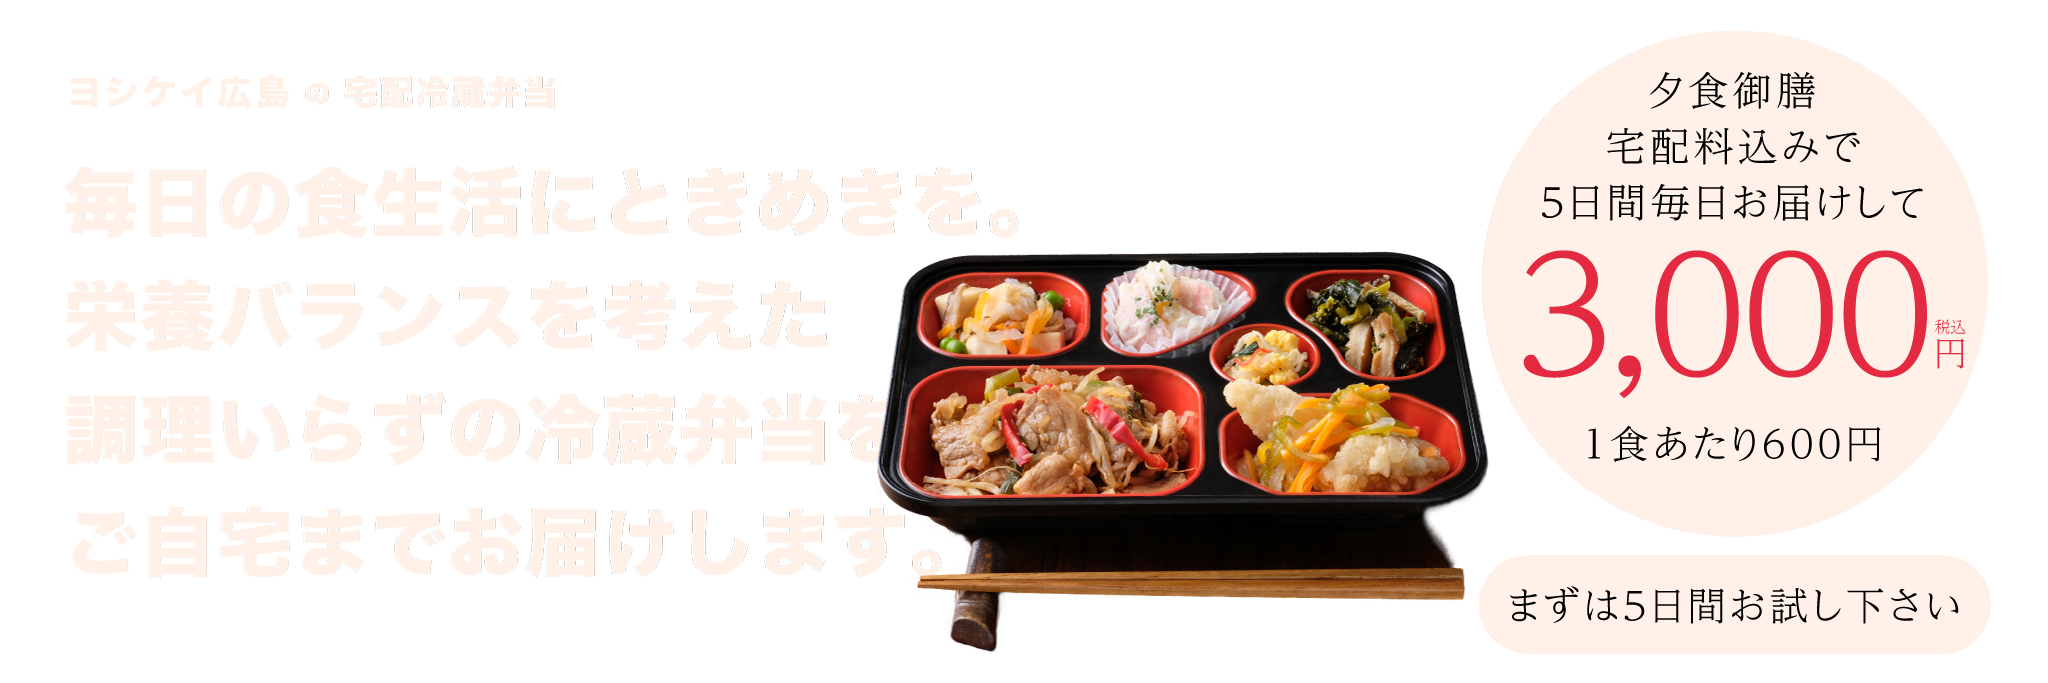 【ヨシケイの宅配冷蔵弁当】毎日の食生活にときめきを。栄養バランスを考えた調理いらずの冷蔵弁当をご自宅までお届けします。